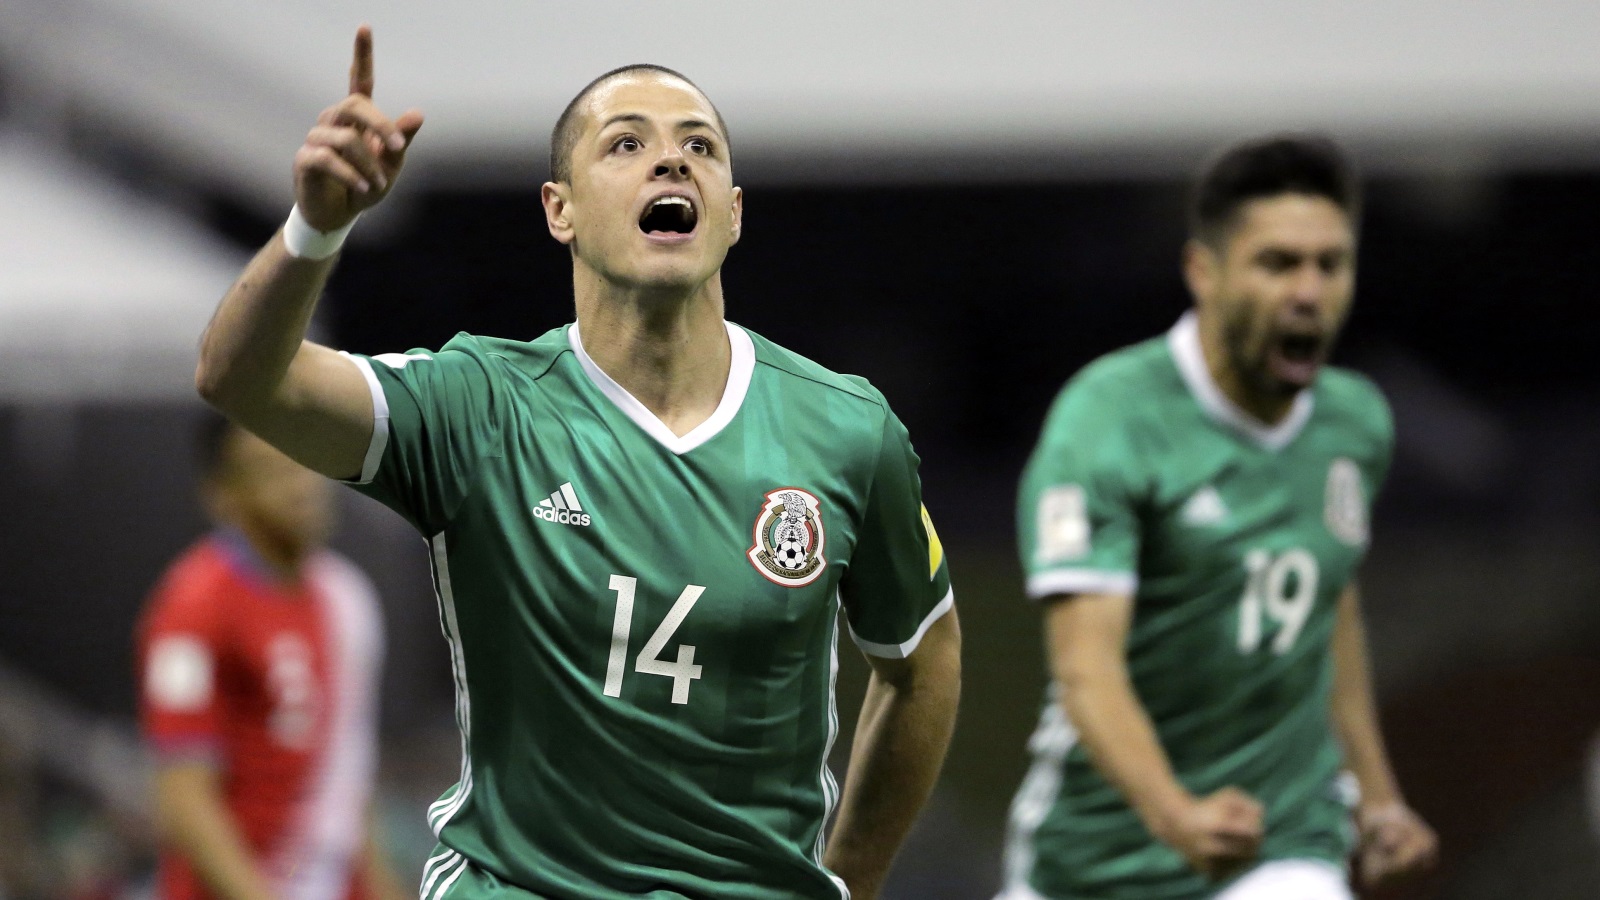 ‪خافيير هيرنانديز يتصدر قائمة هدافي المنتخب‬ المكسيكي عبر التاريخ( الأوروبية)